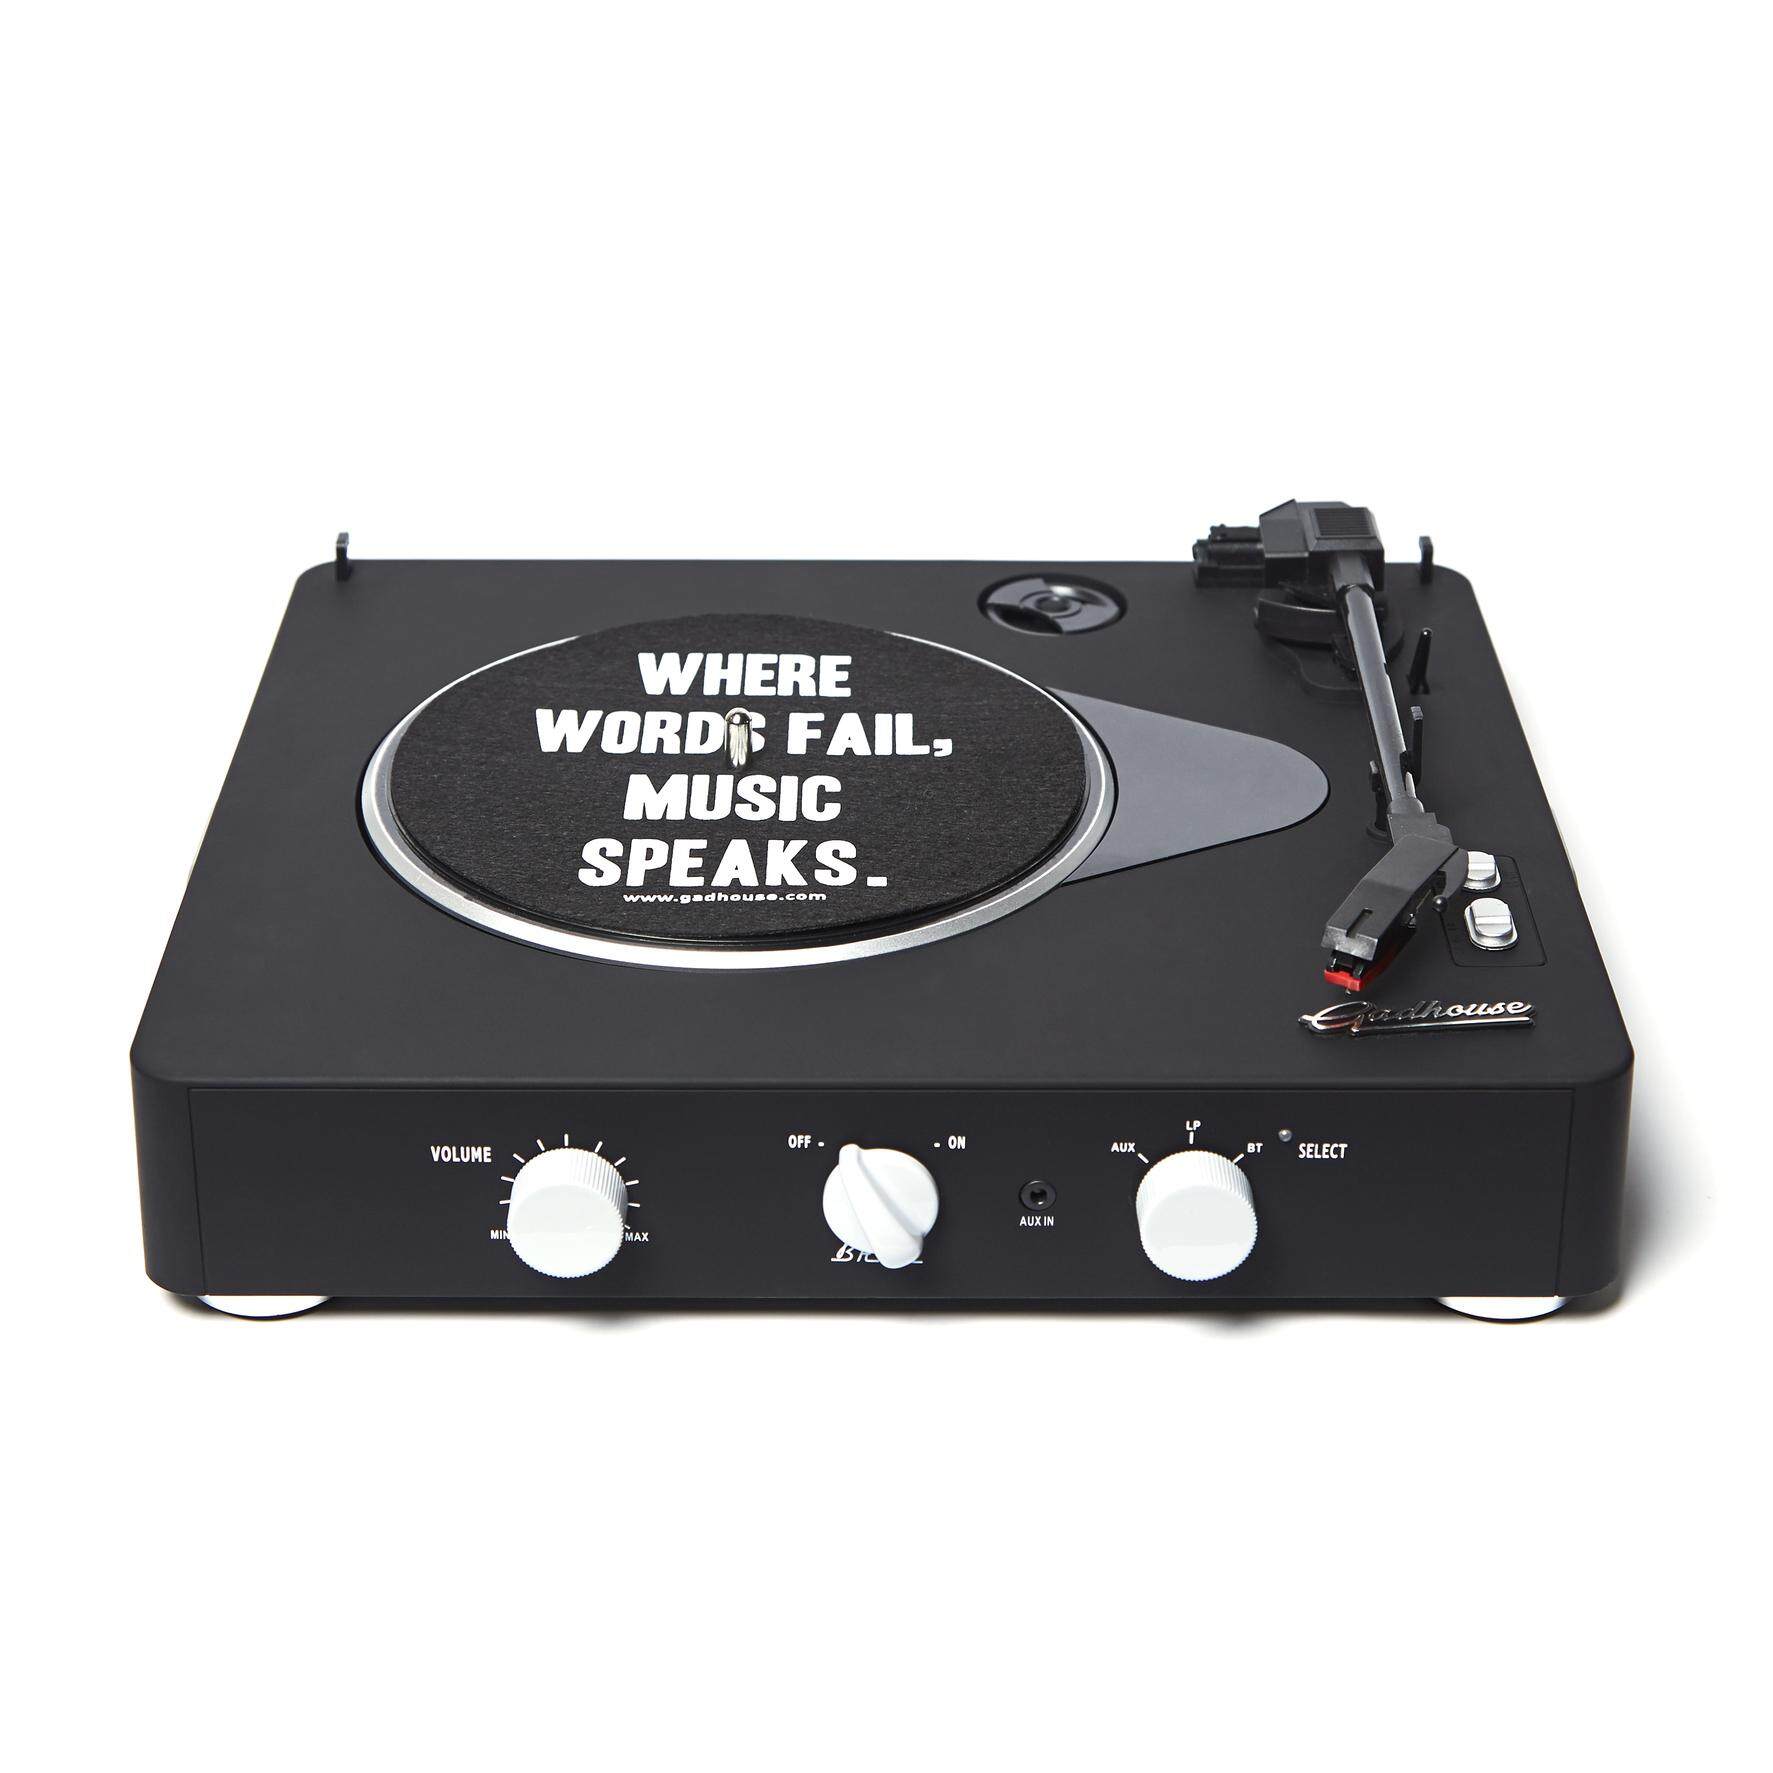 เครื่องเล่นแผ่นเสียง Gadhouse Brad Black Edition Wireless Streaming 3-Speed Turntable, Portable Vinyl LP Record Player with Built-in Speakers and Rechargeable Battery